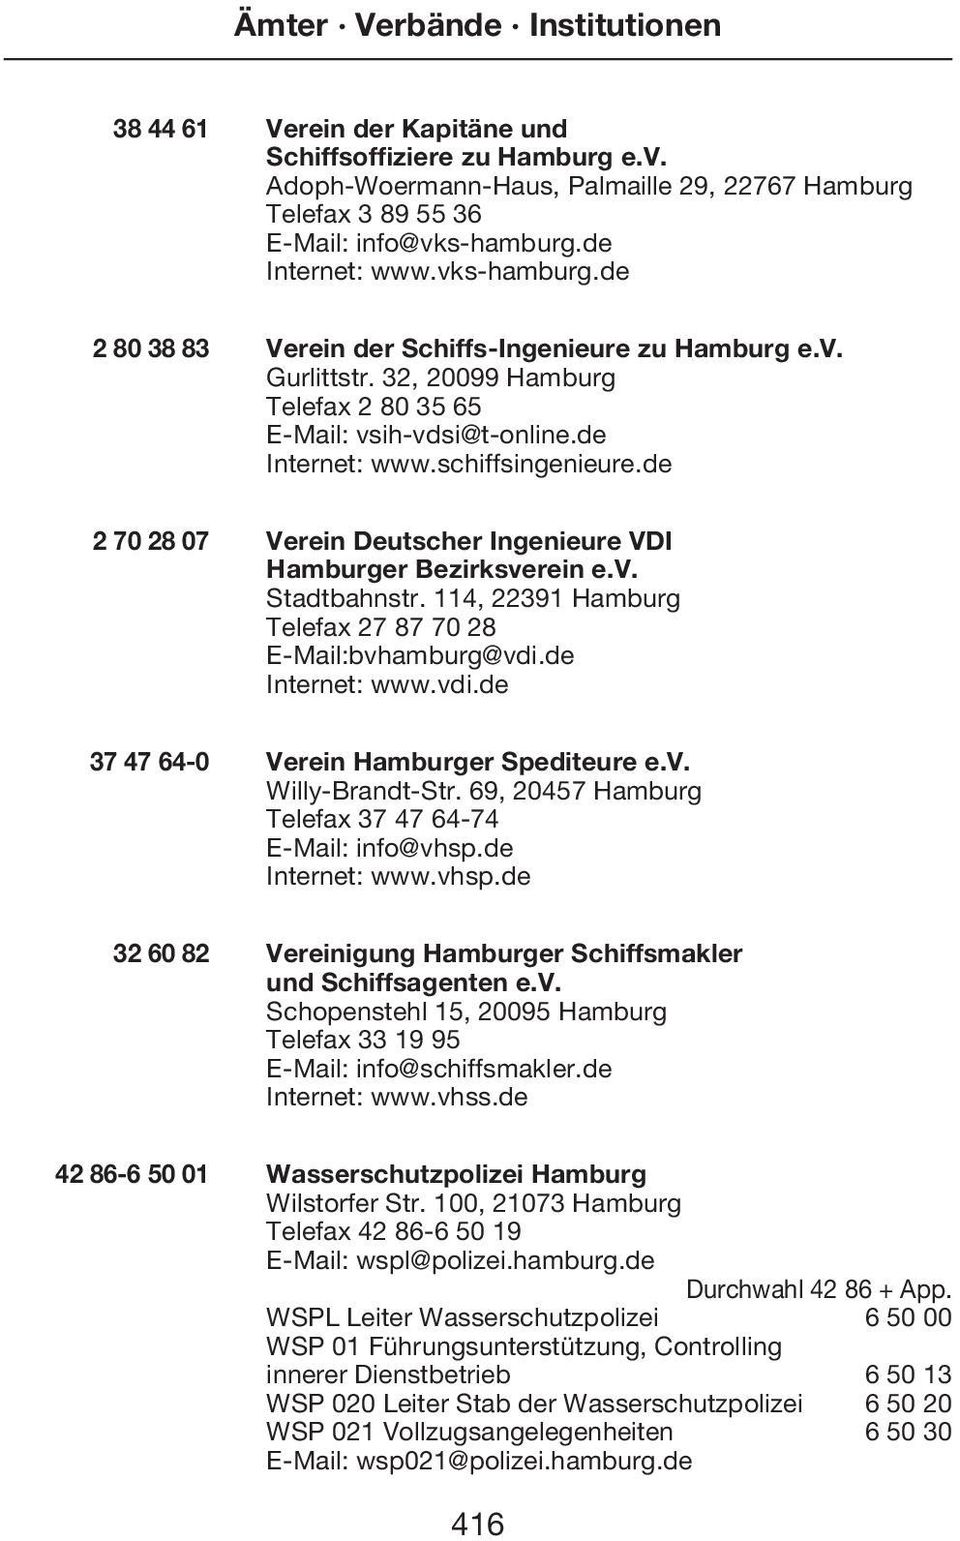 de 2 70 28 07 Verein Deutscher Ingenieure VDI Hamburger Bezirksverein e.v. Stadtbahnstr. 114, 22391 Hamburg Telefax 27 87 70 28 E-Mail:bvhamburg@vdi.de Internet: www.vdi.de 37 47 64-0 Verein Hamburger Spediteure e.